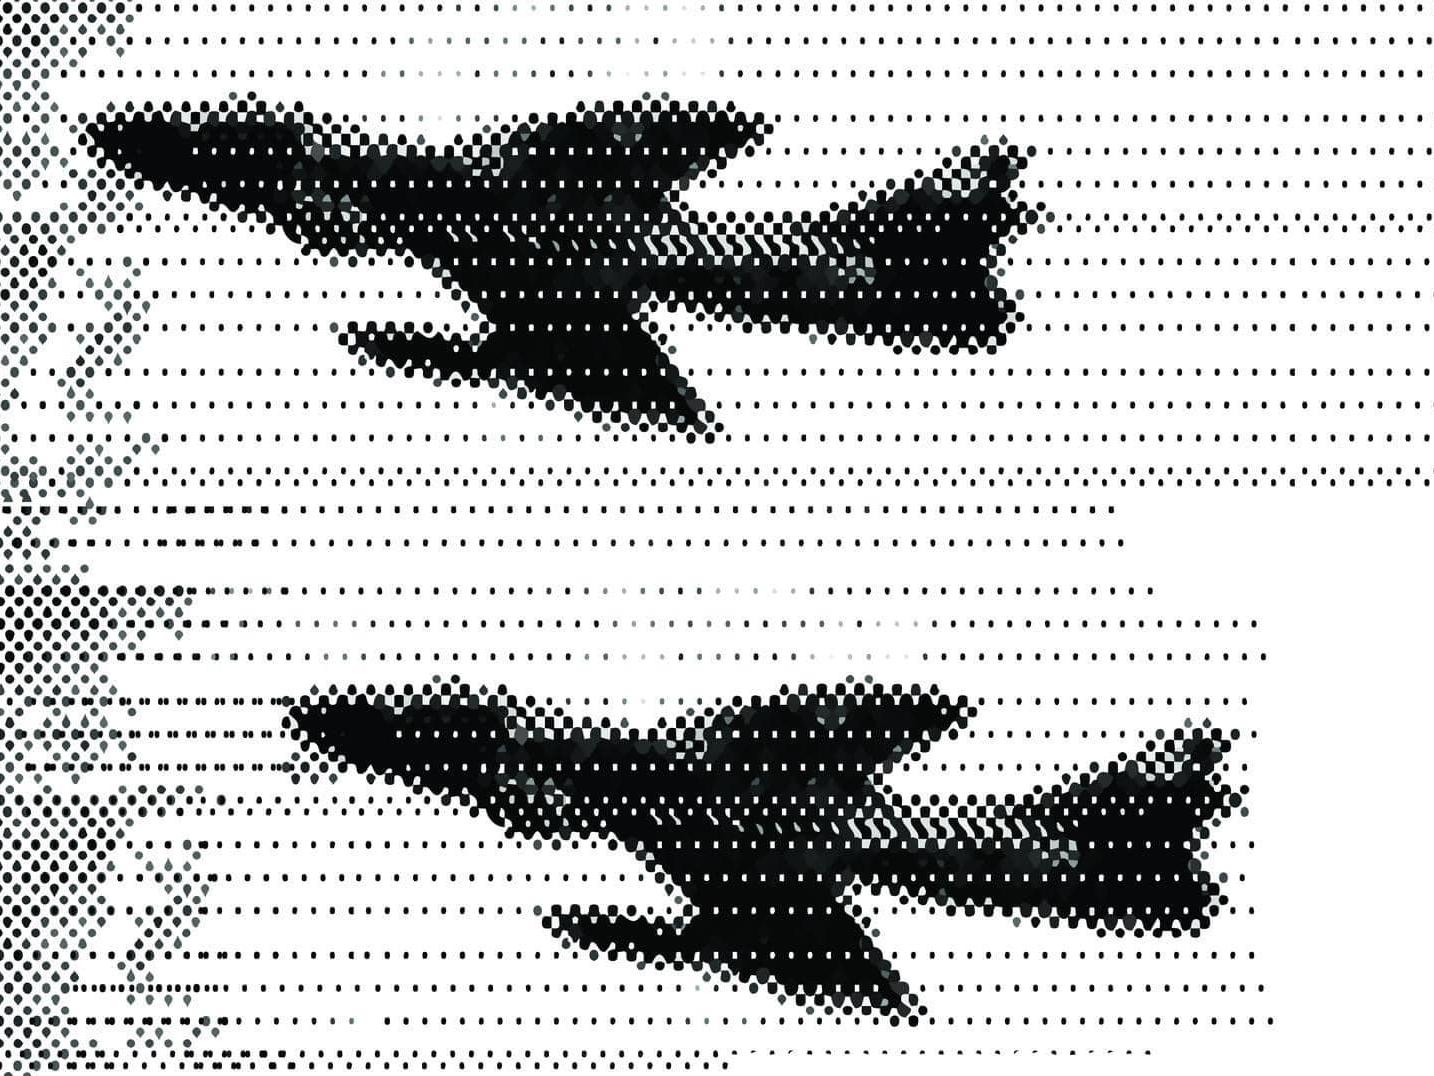 Afiche en blanco y negro donde se aprecia la silueta de tres aviones militares. En un costado escrita la leyenda “Memoria presente: 50 años del Golpe de Estado”